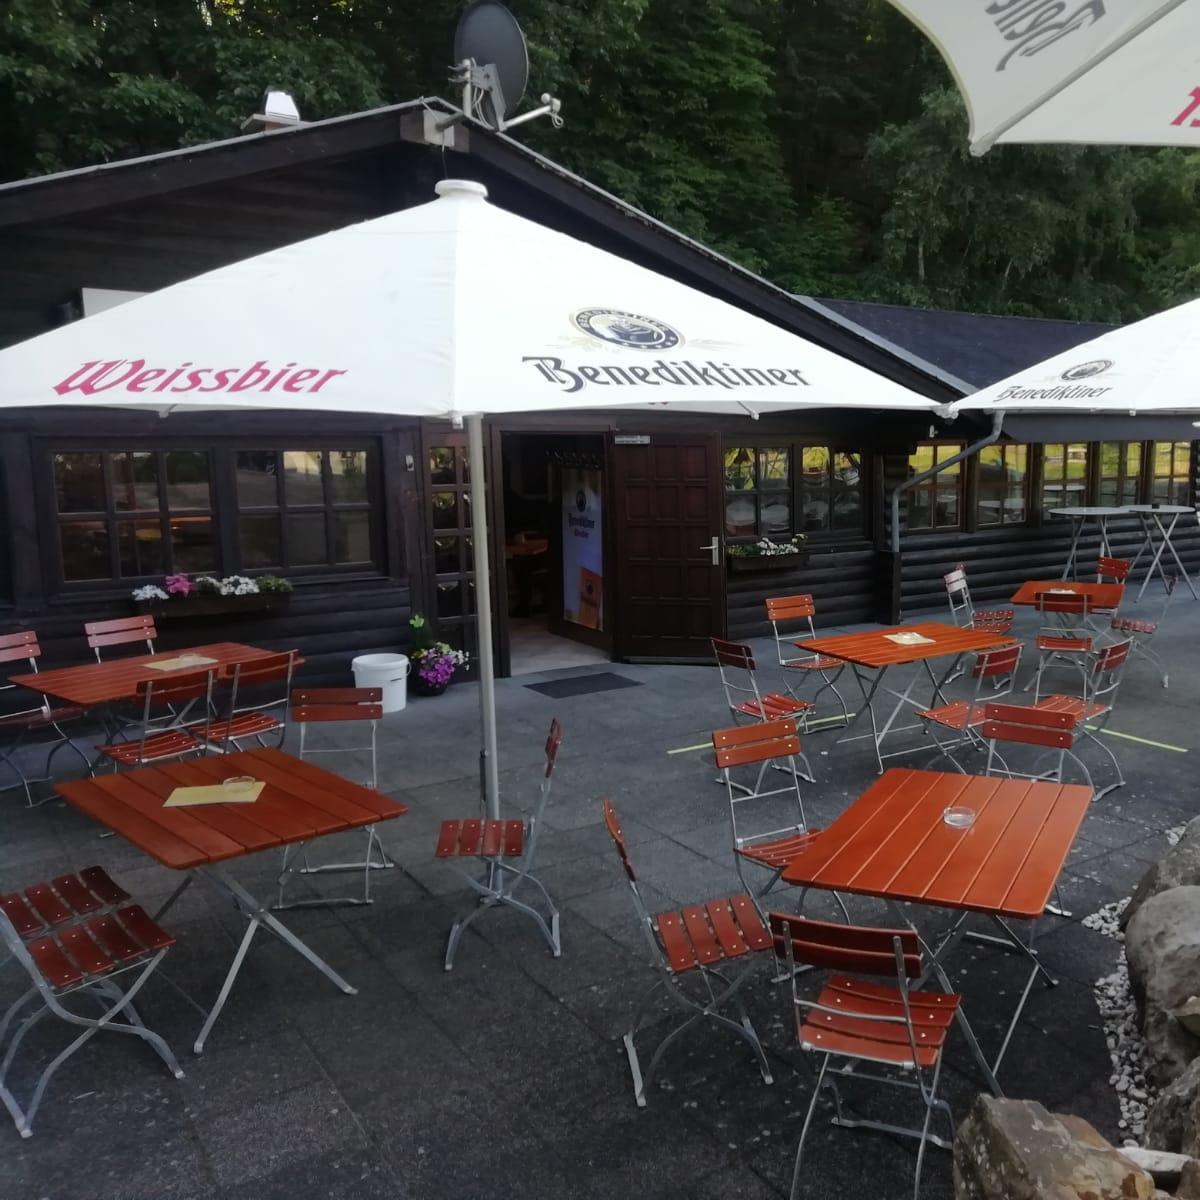 Restaurant "Wallerstube" in Obersteinebach